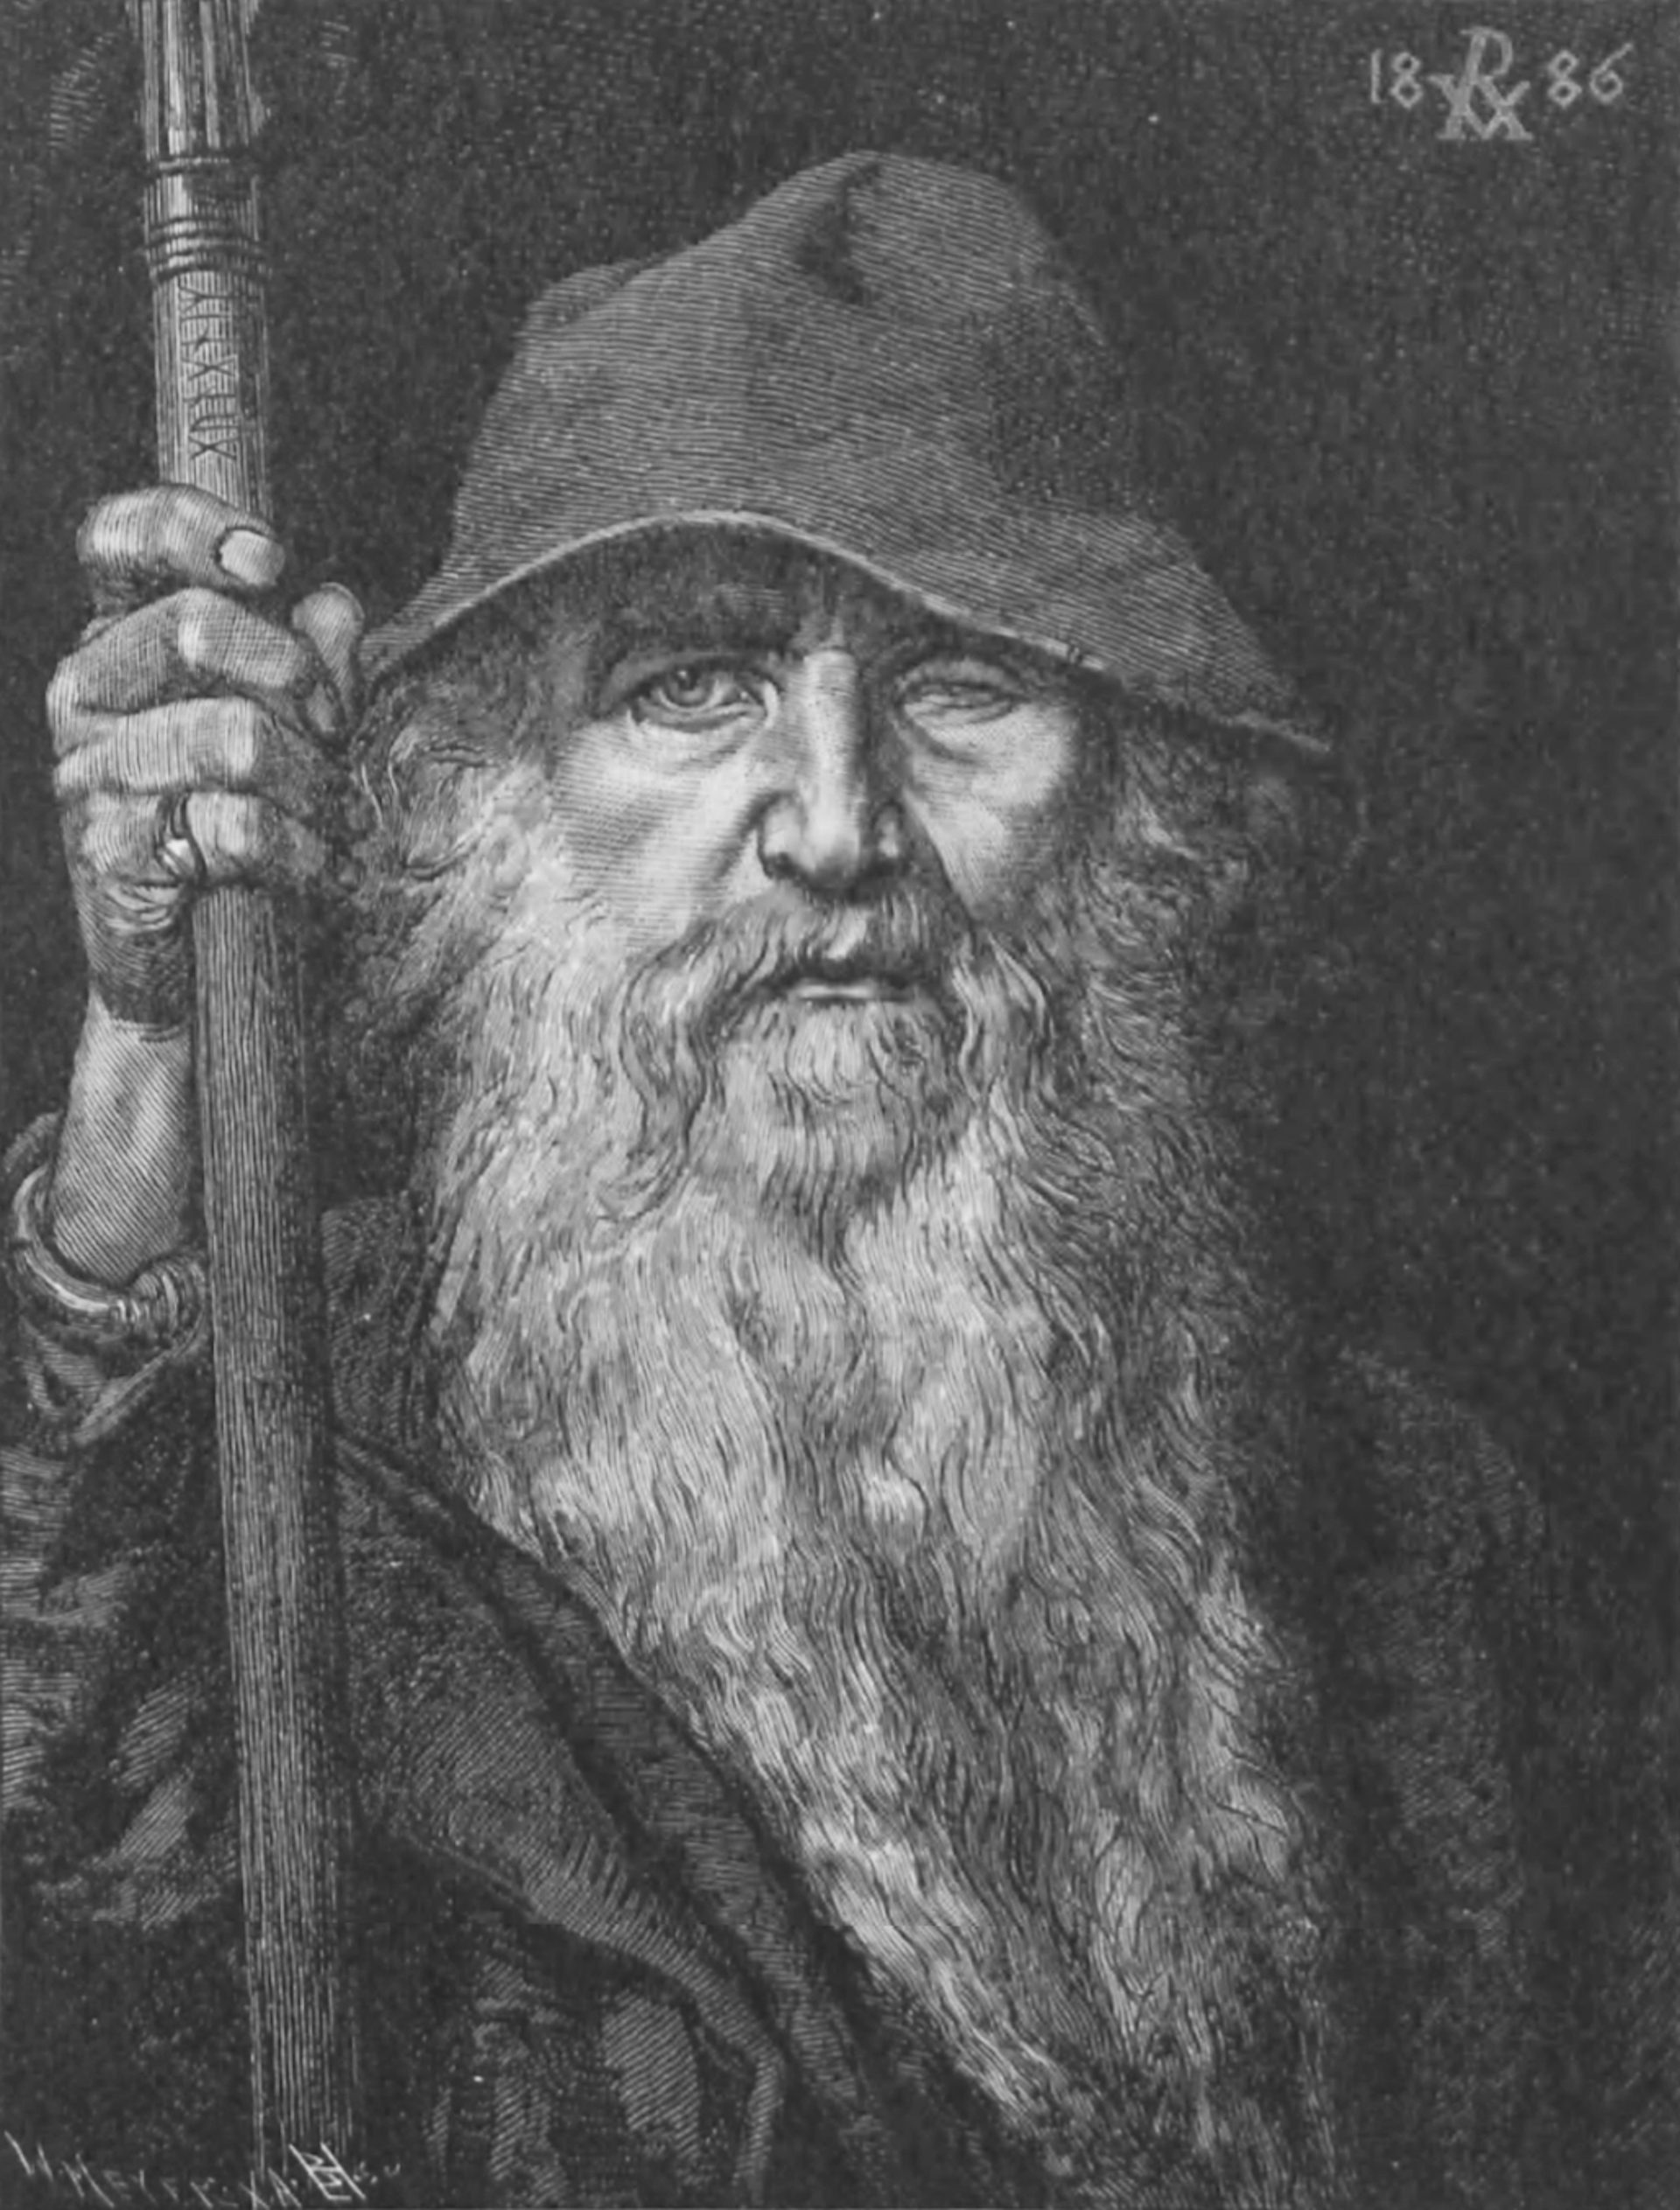 Odin as Wanderer by Georg von Rosen (1886)